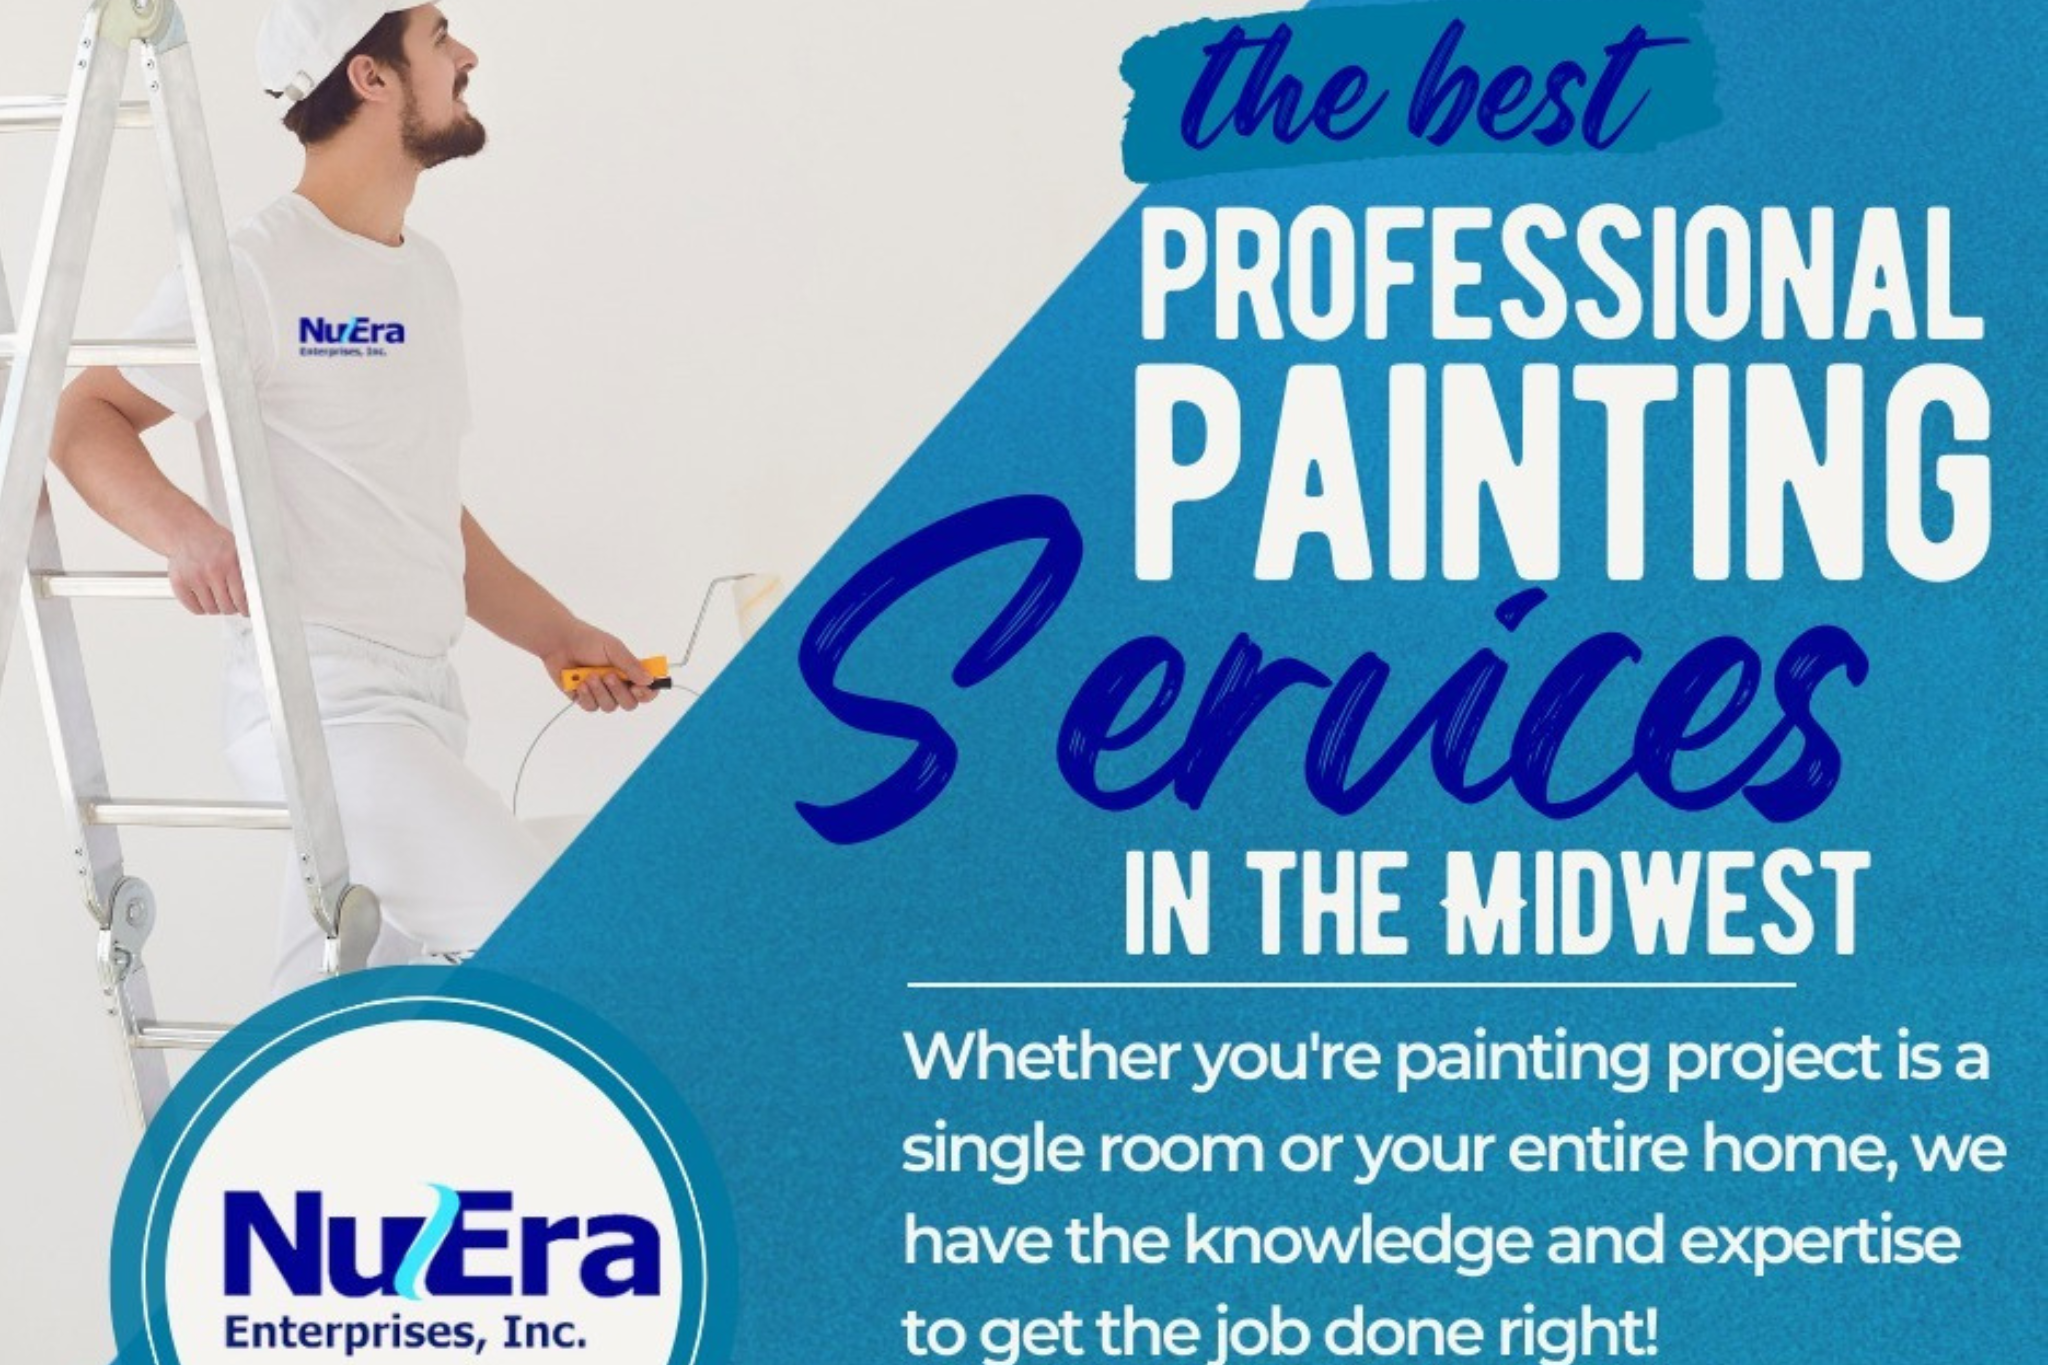 House Painting - NuEra Enterprises